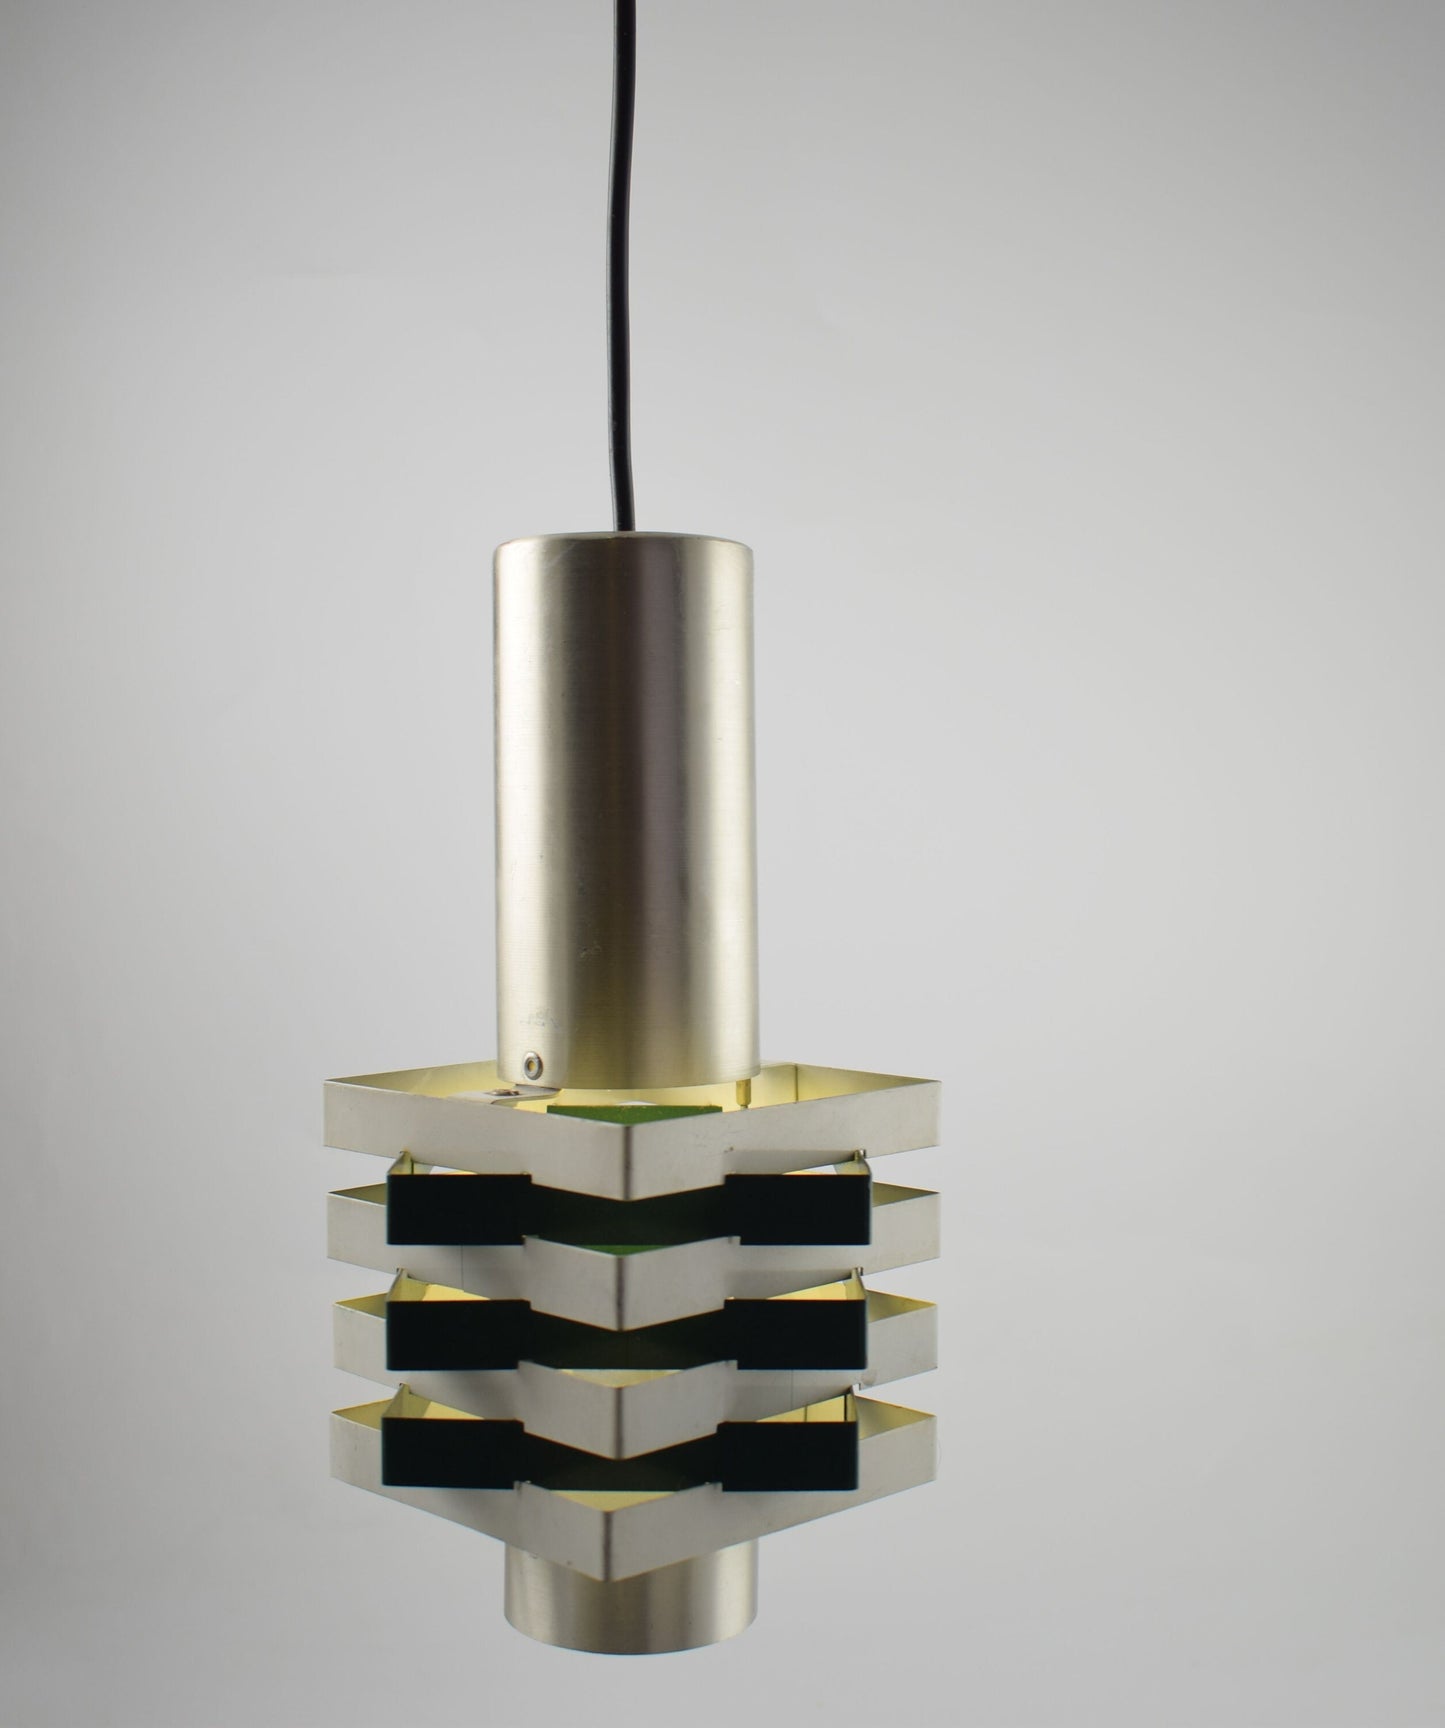 Anvia hanglamp, hanglamp van JJM Hoogervorst voor Aniva Holland